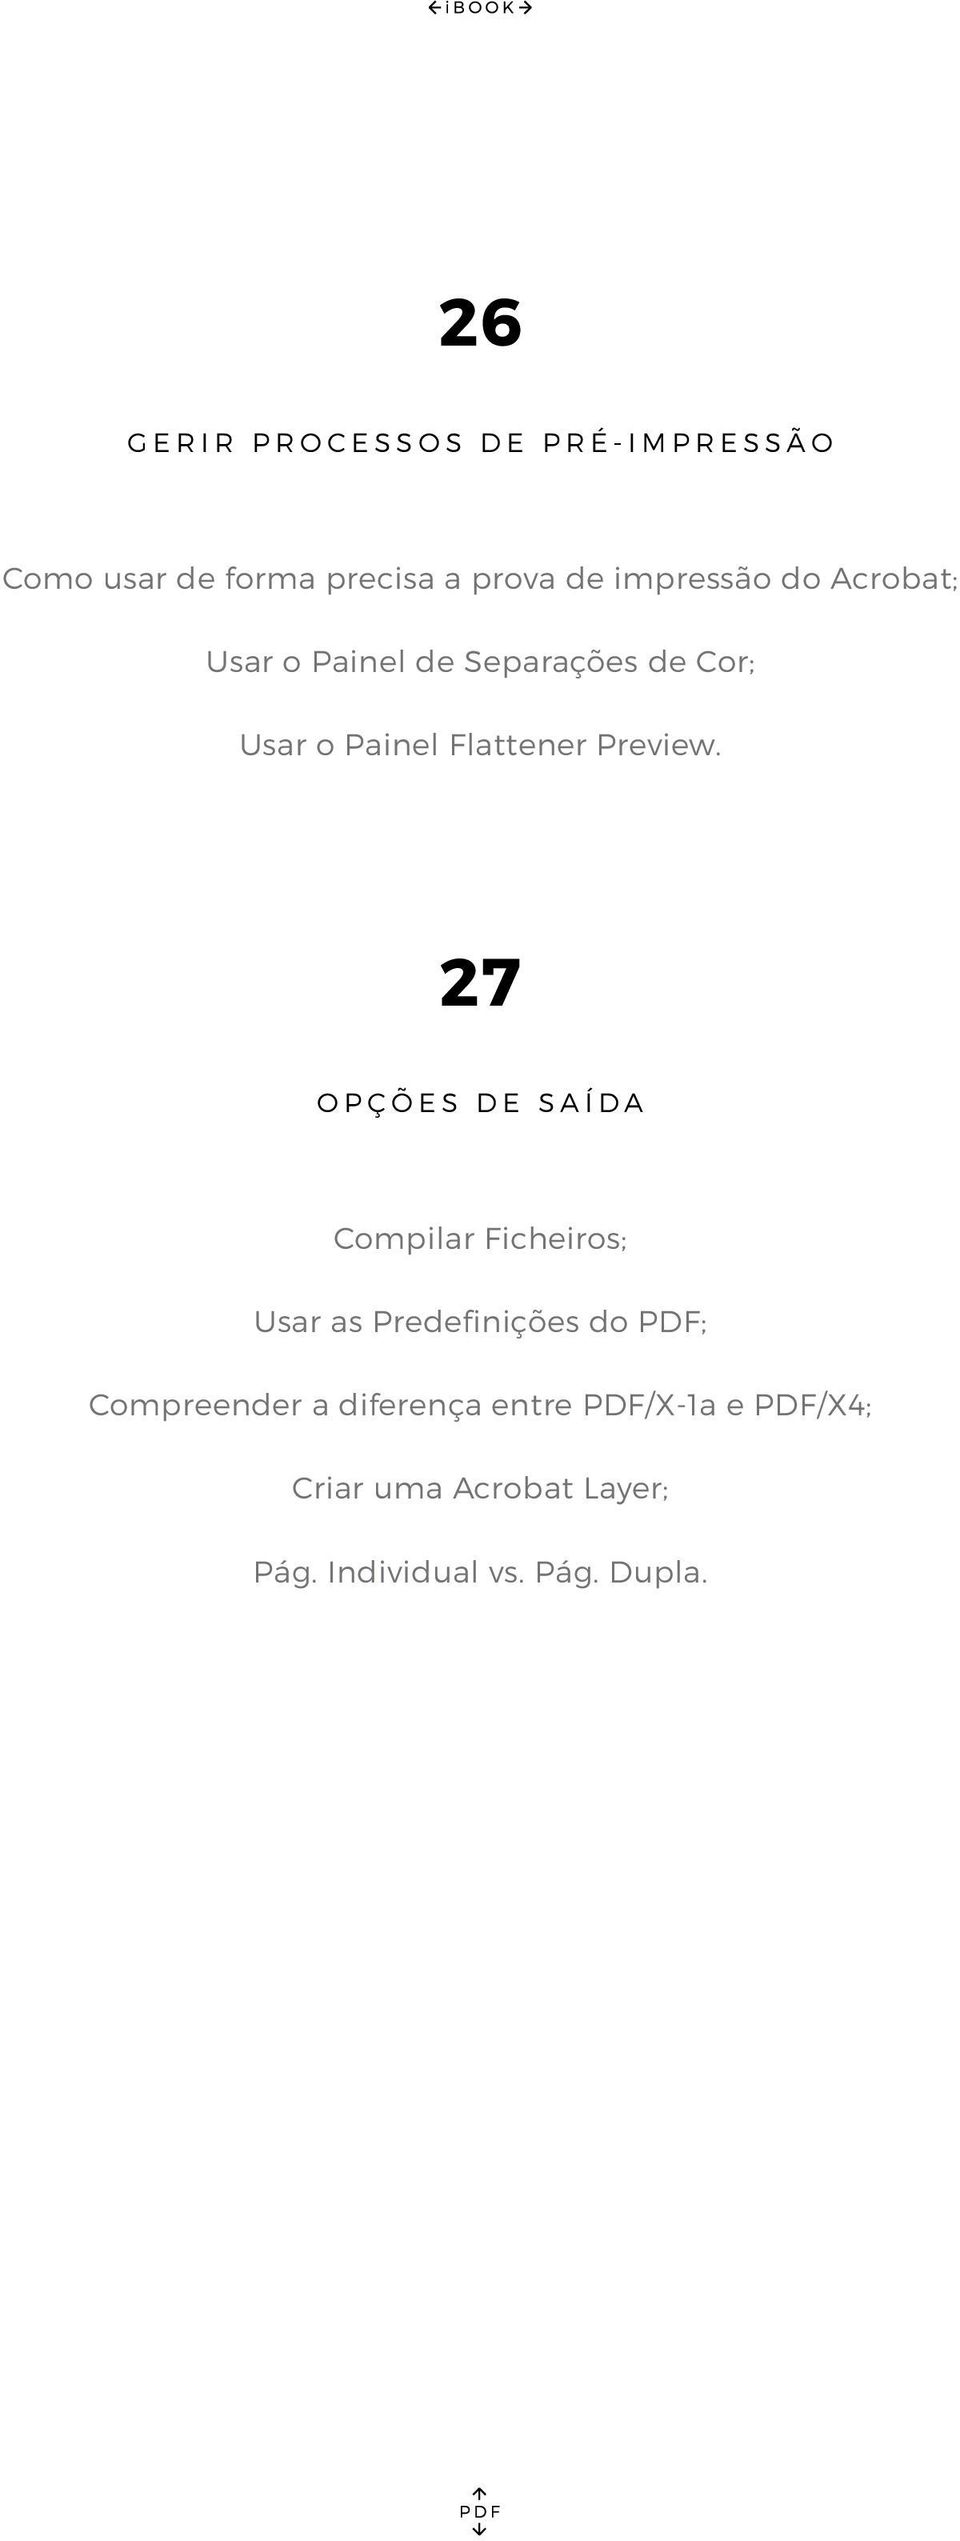 27 OPÇÕES DE SAÍDA Compilar Ficheiros; Usar as Predefinições do PDF; Compreender a